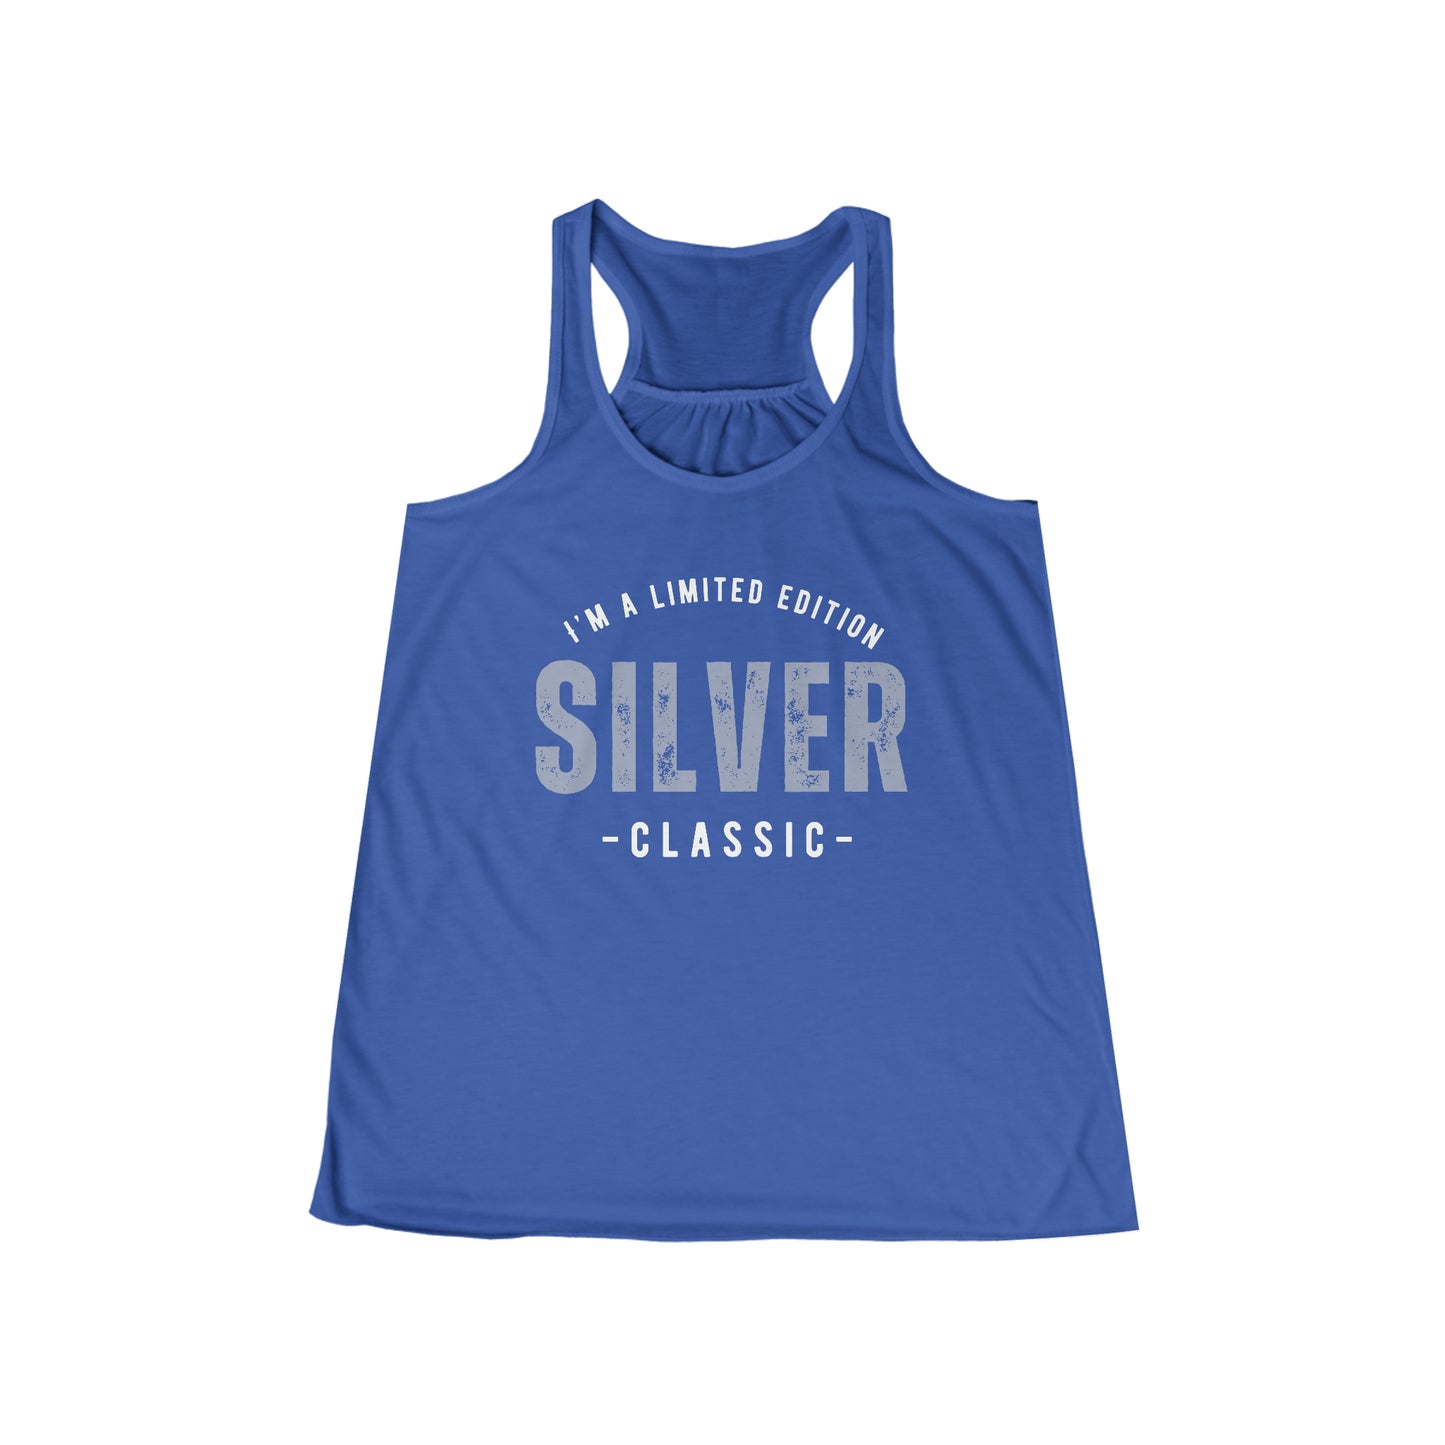 Silver Classic. Women's Flowy Racerback Tank